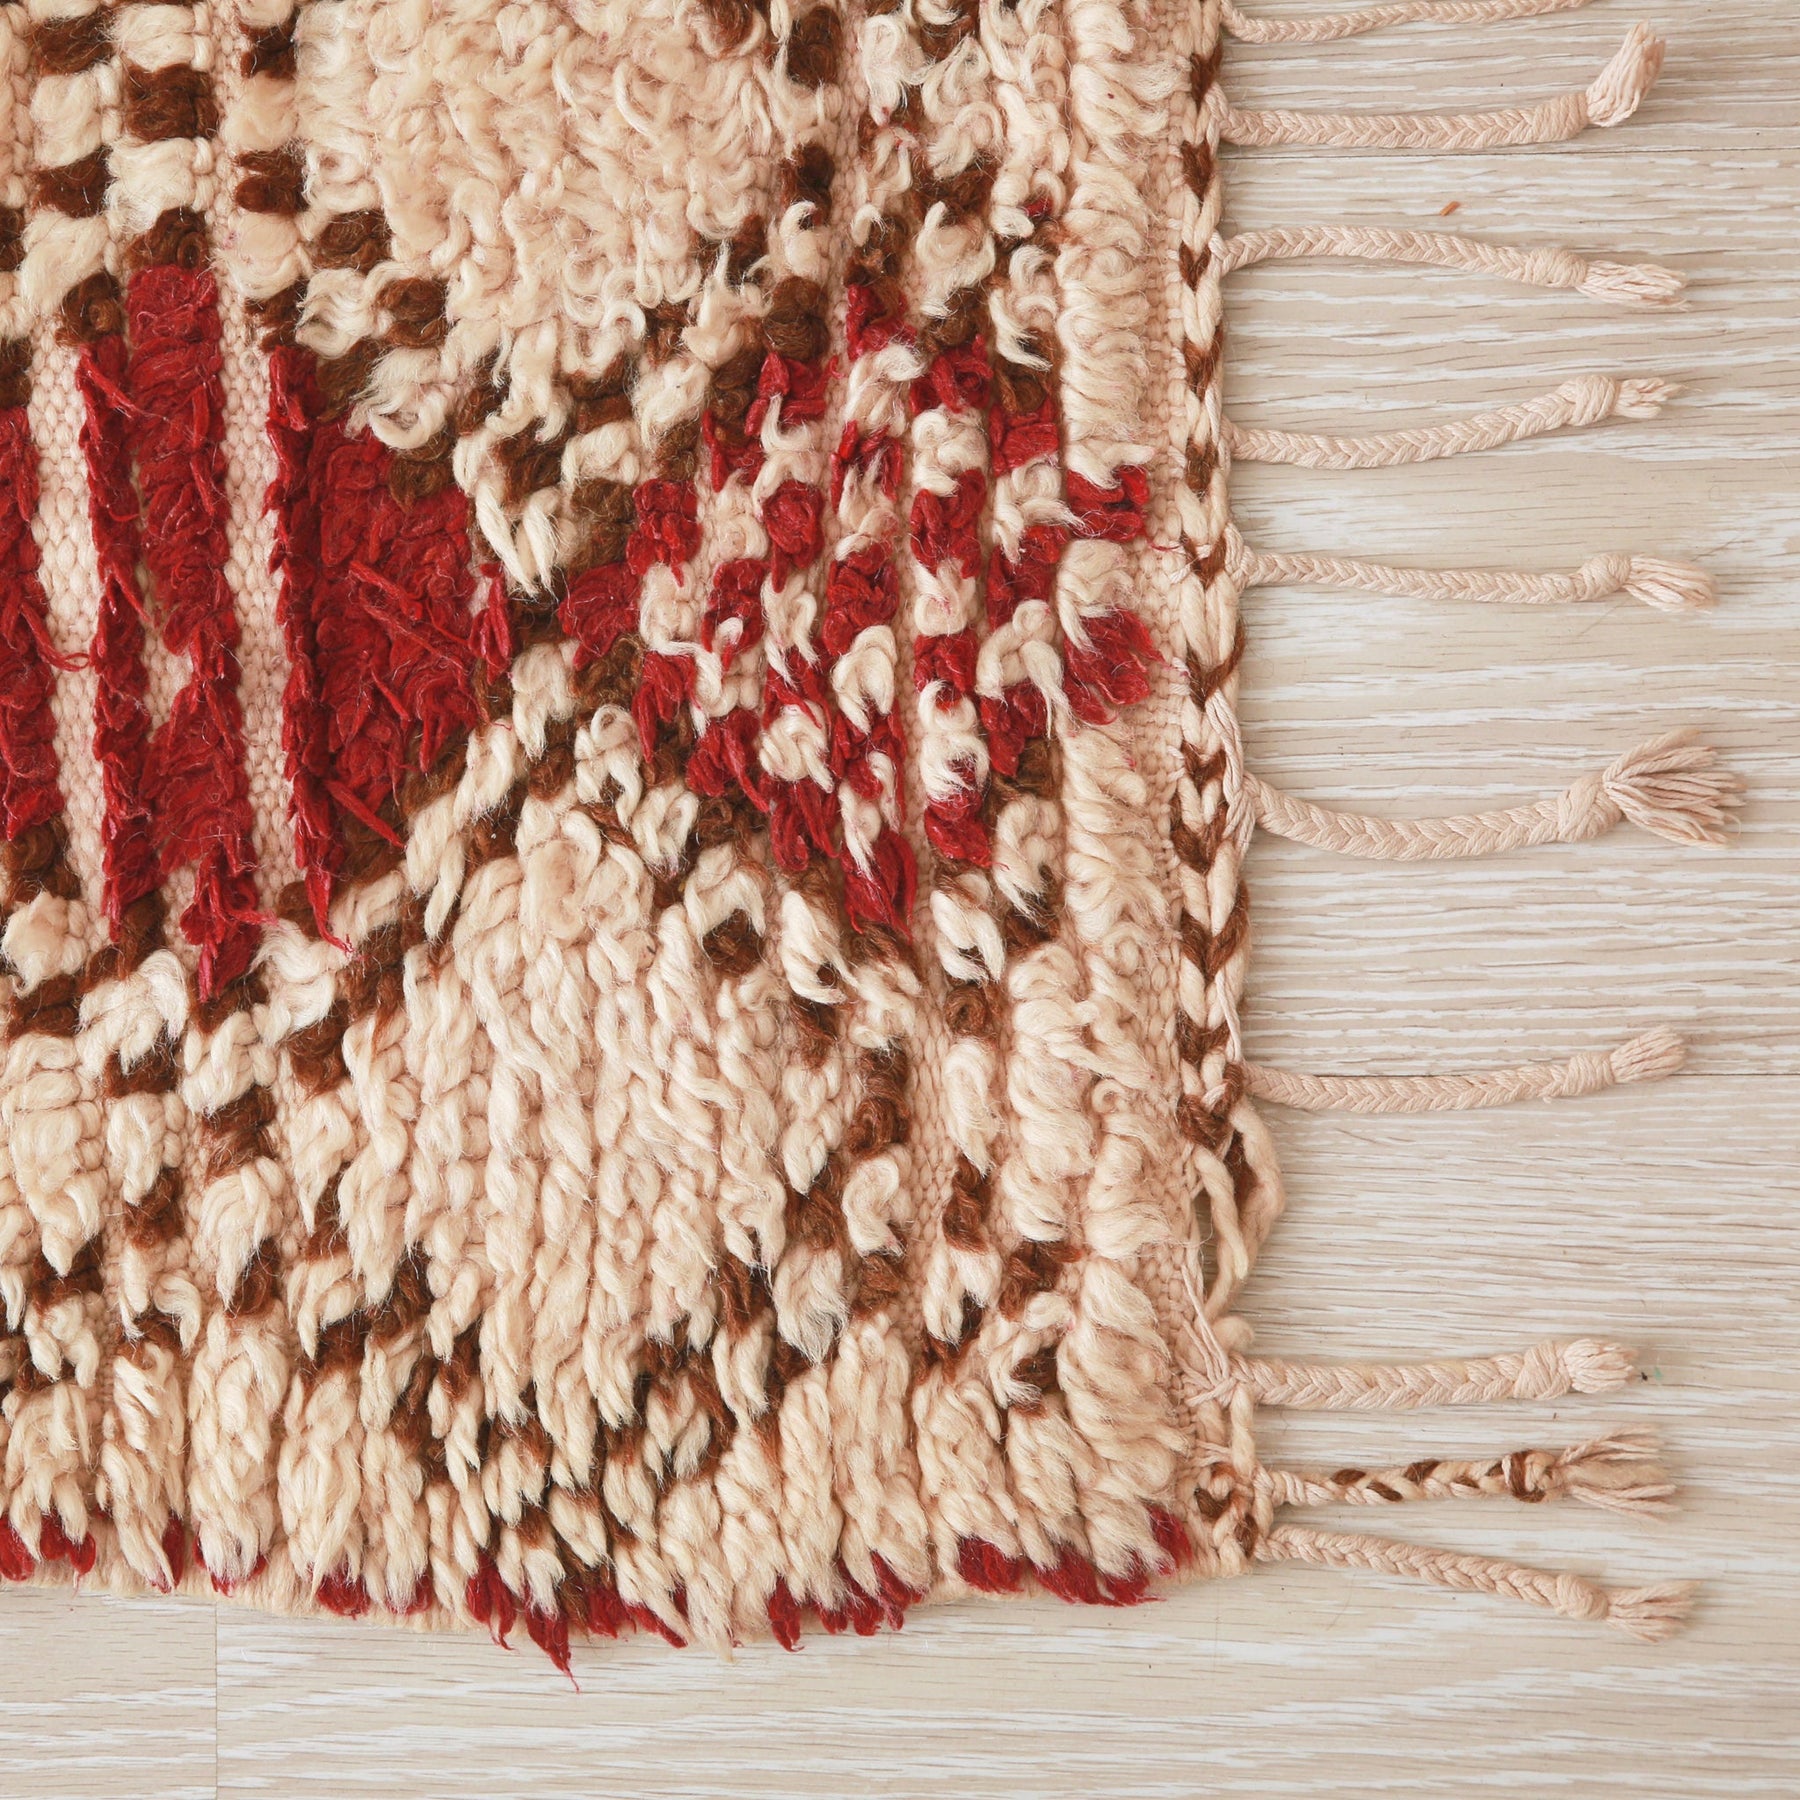 angolo del tappeto vintage che mostra i peli della lana un po consumati e la frangia